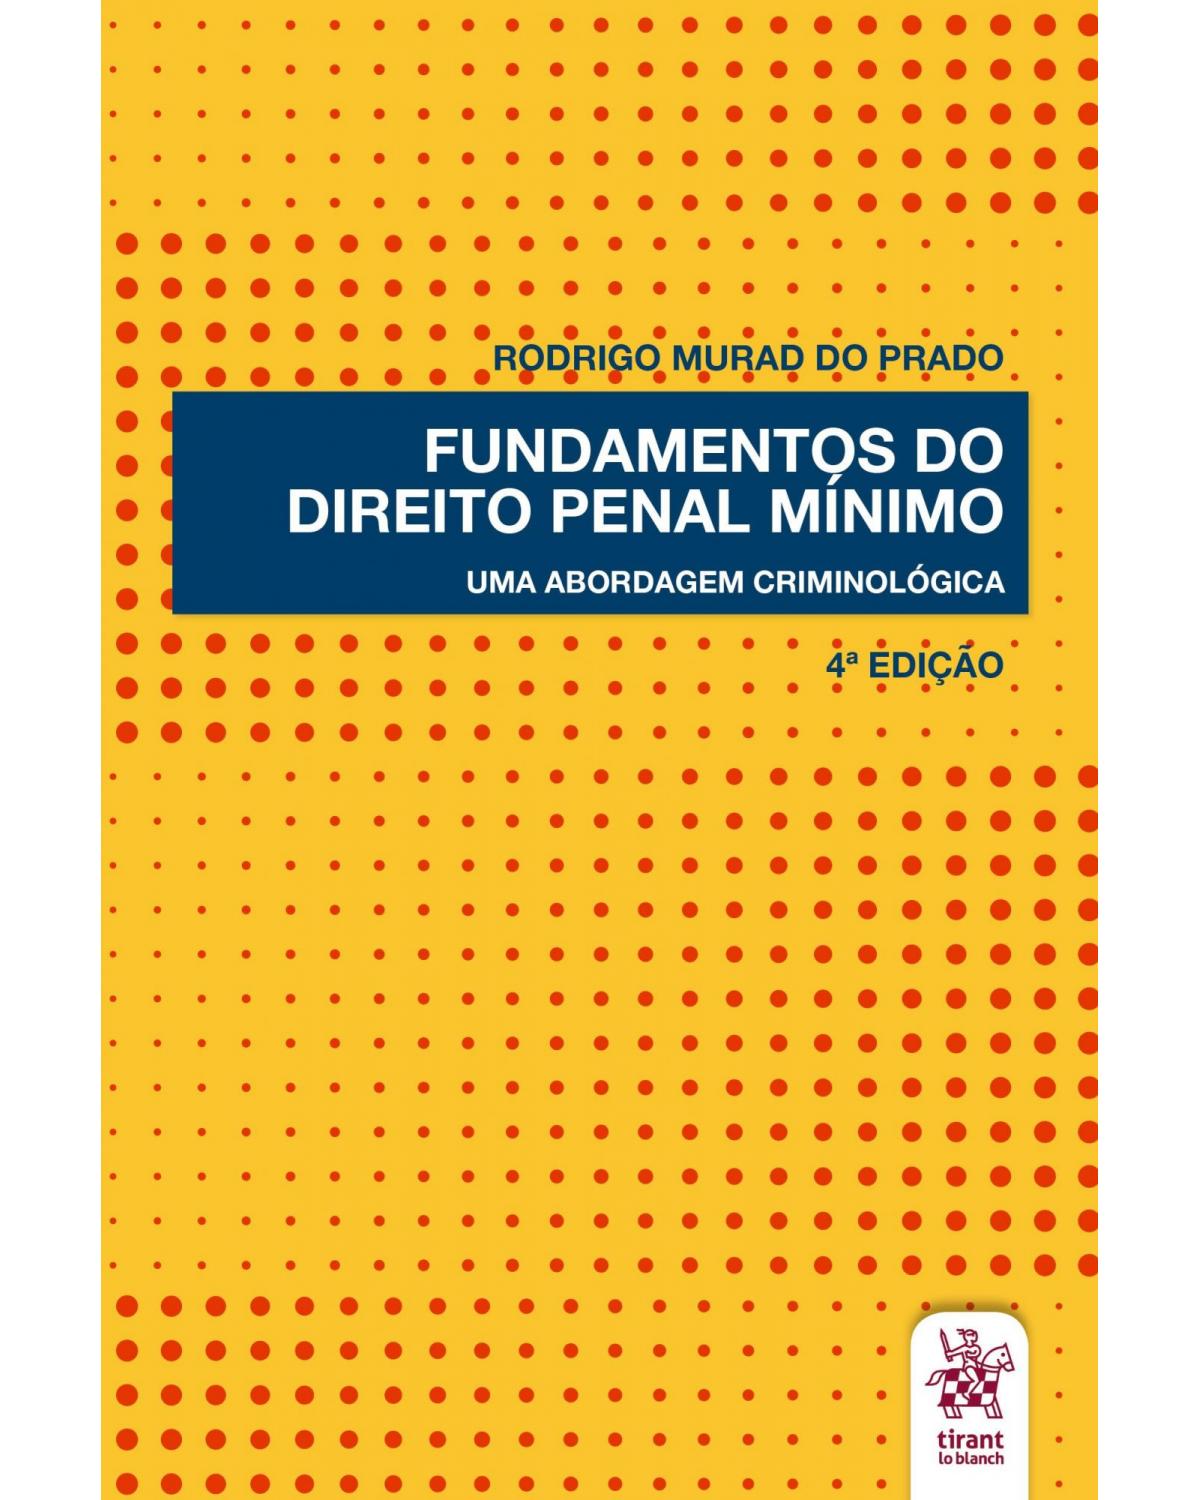 Fundamentos do direito penal mínimo: uma abordagem criminológica - 4ª Edição | 2020